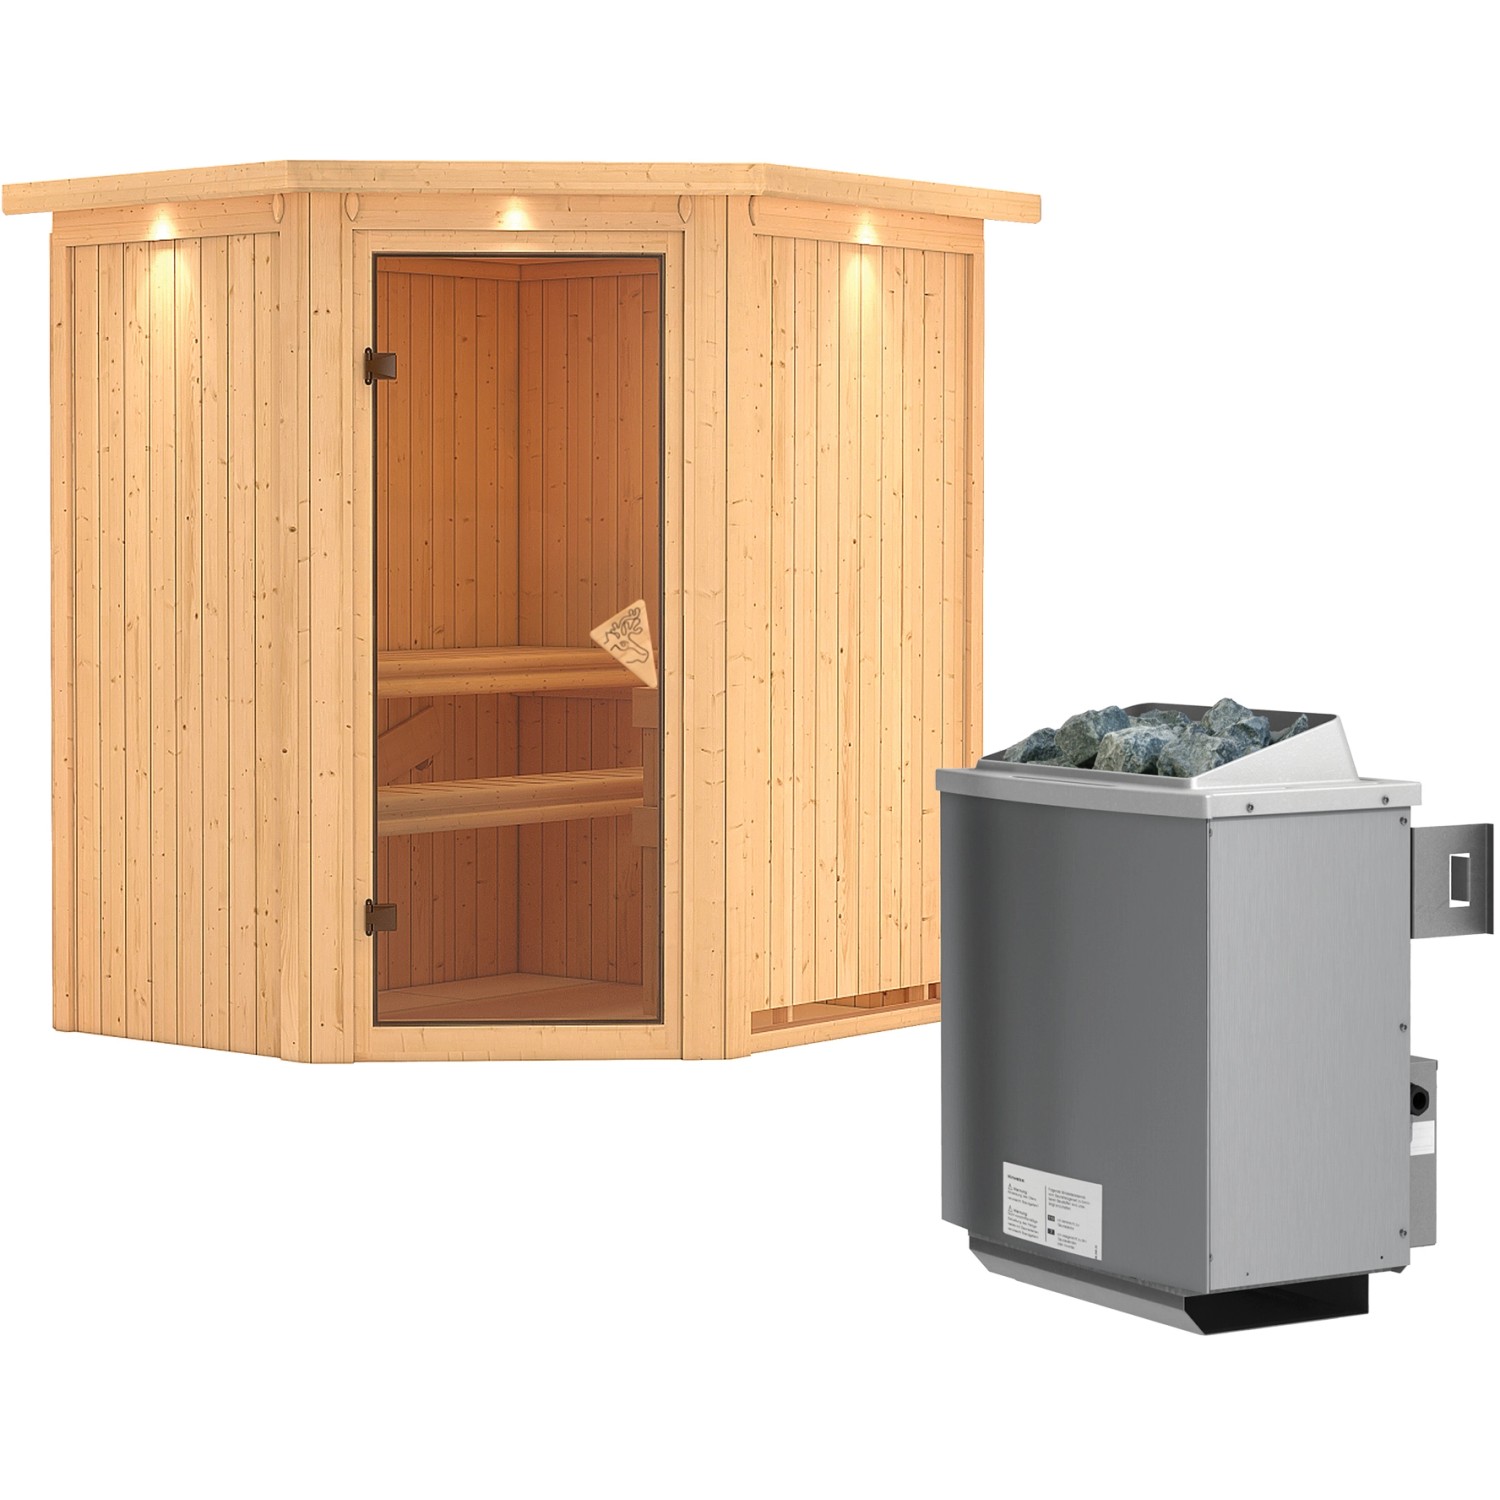 Karibu Sauna-Set Tjorven inkl. Ofen 9 kW mit integr. Steuerung, Dachkranz günstig online kaufen